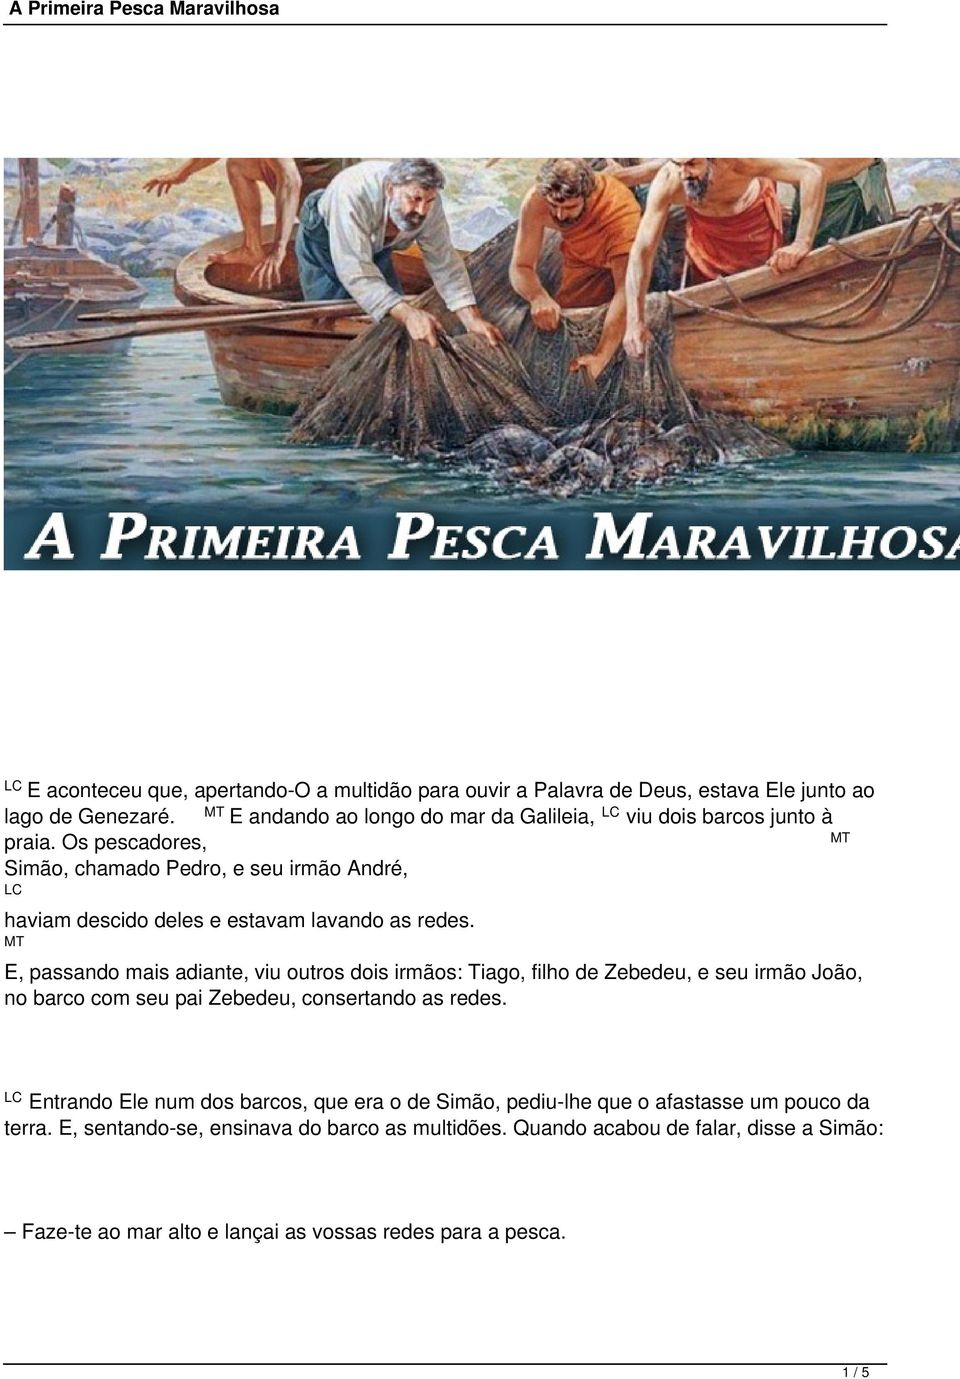 Os pescadores, Simão, chamado Pedro, e seu irmão André, haviam descido deles e estavam lavando as redes.